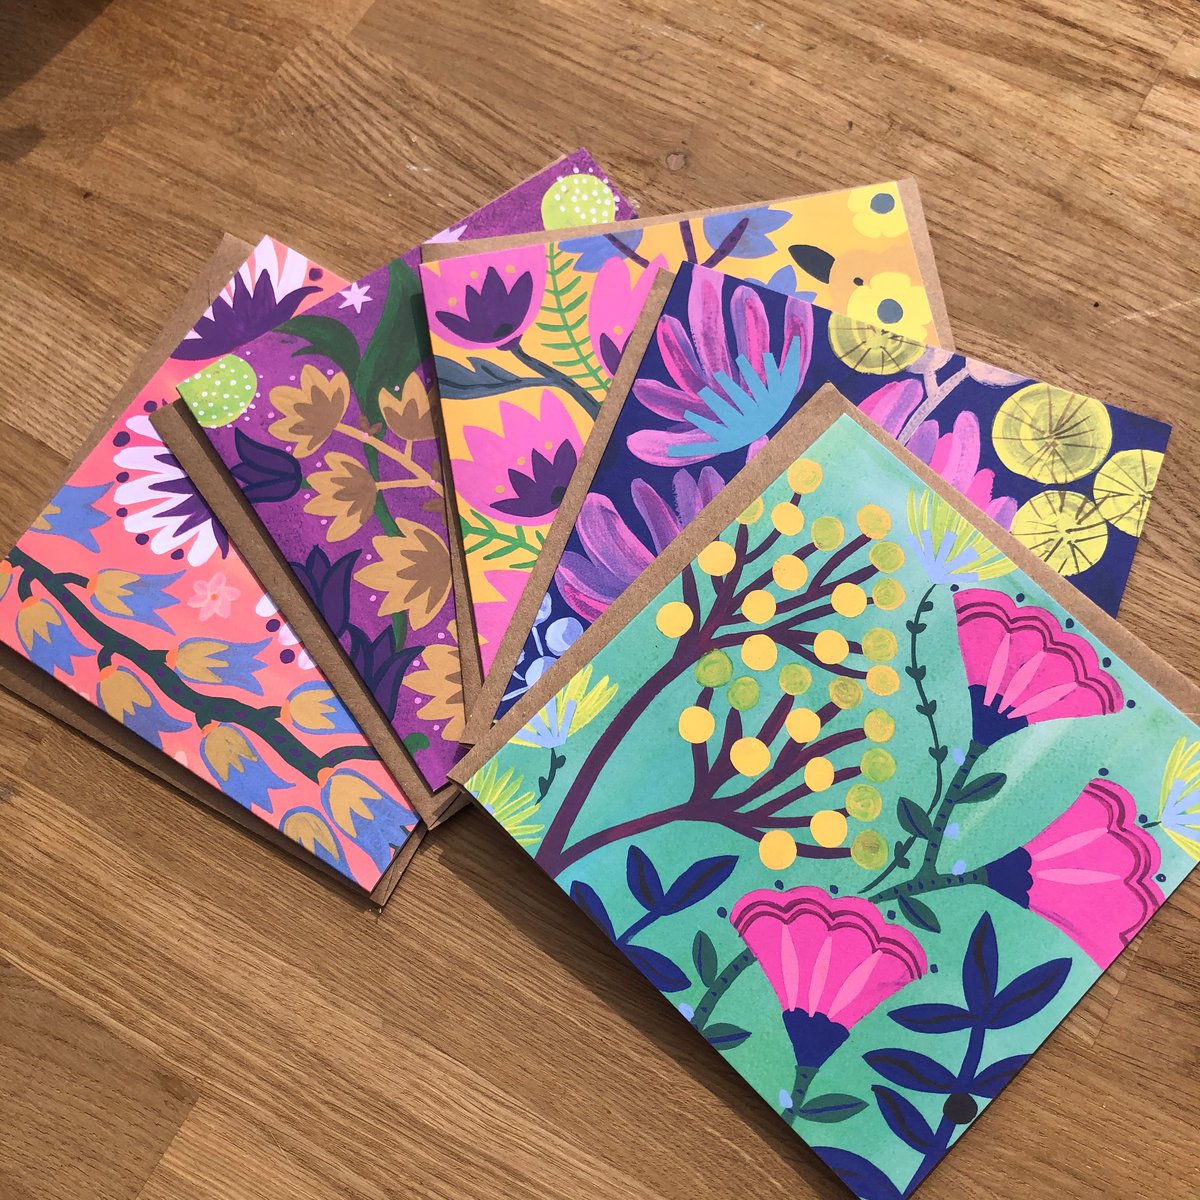 Fantastical Floral Card Set of 5